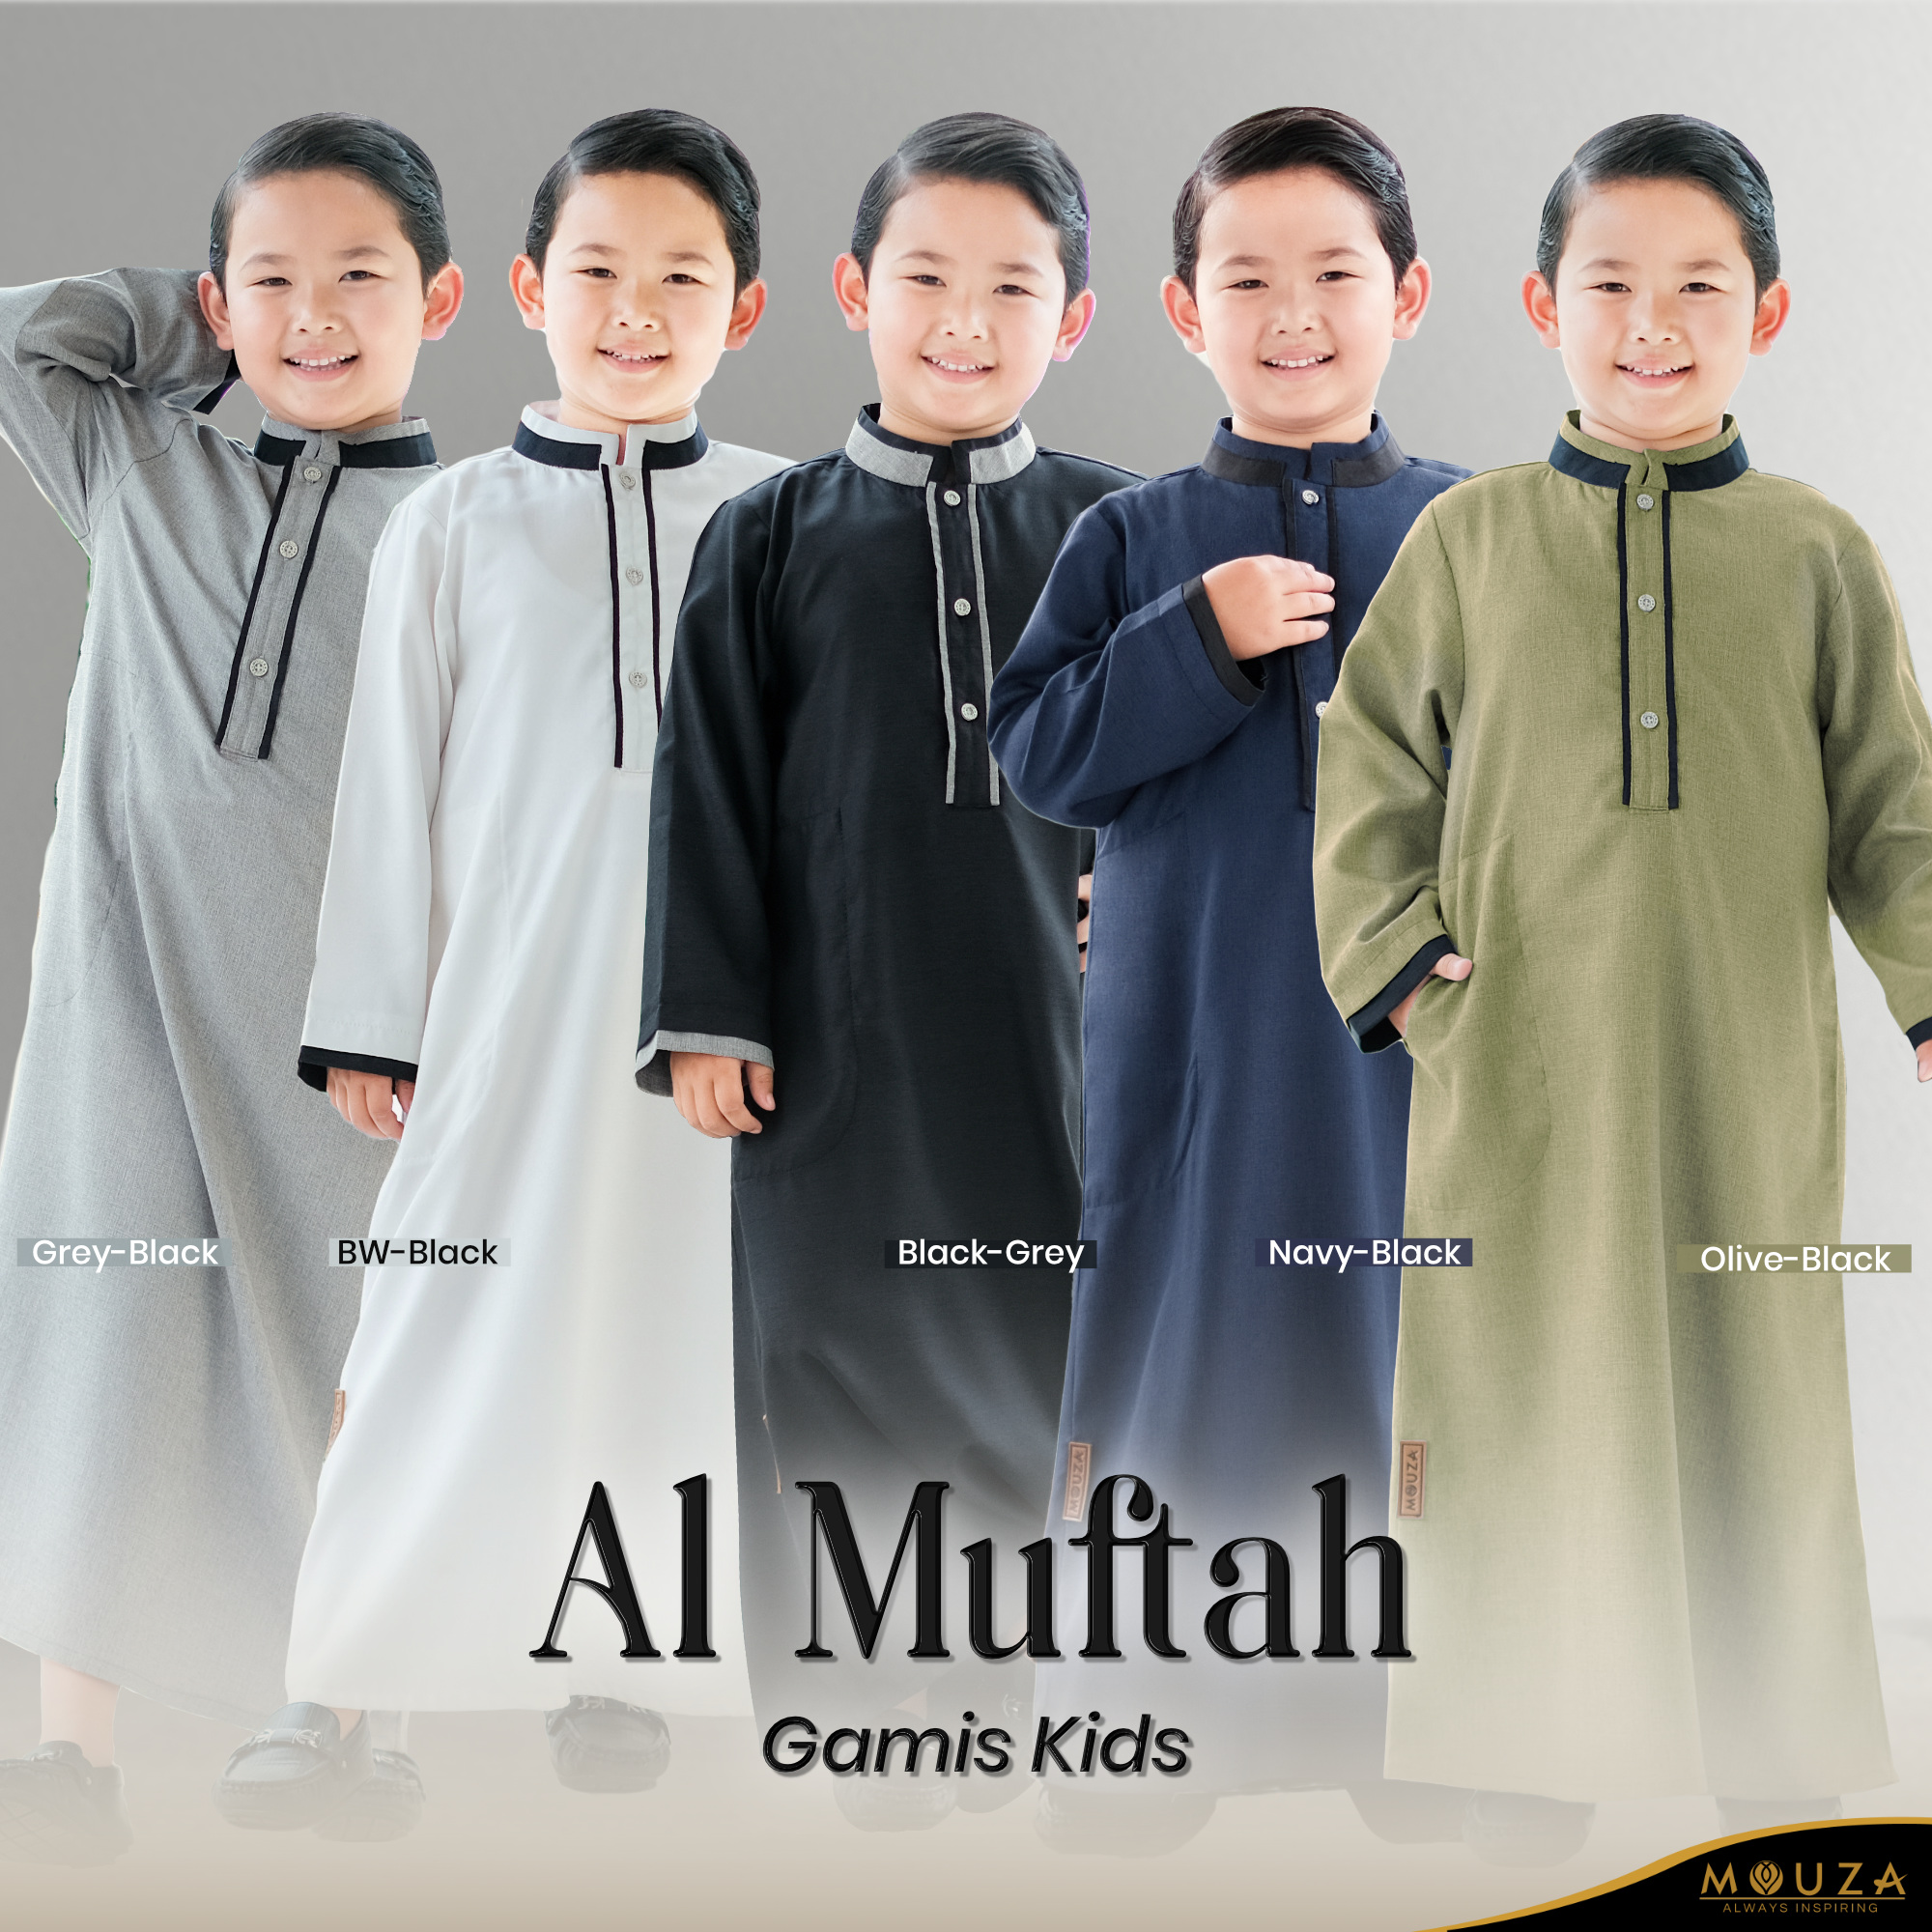 Al Muftah Gamis Kids